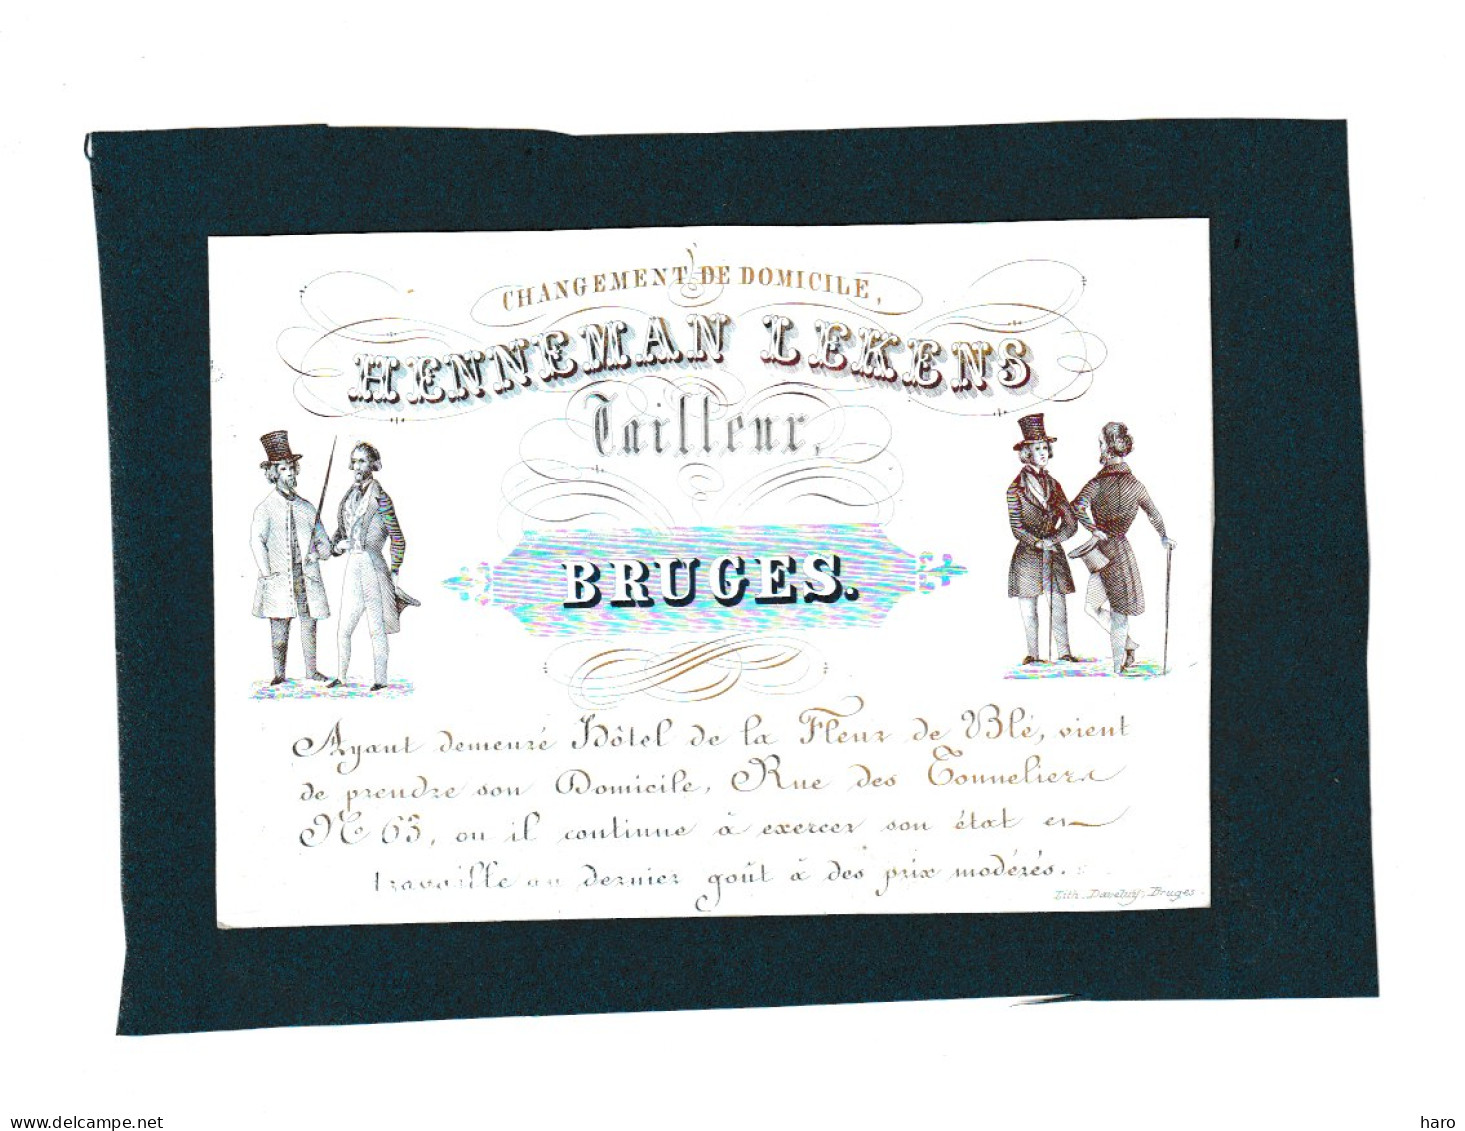 BRUGGE /BRUGES  - Carte De Visite Porcelaine - Tailleur HENNEMAN LEKENS   +/- 1840...50 - (Mi 13) - Visitekaartjes